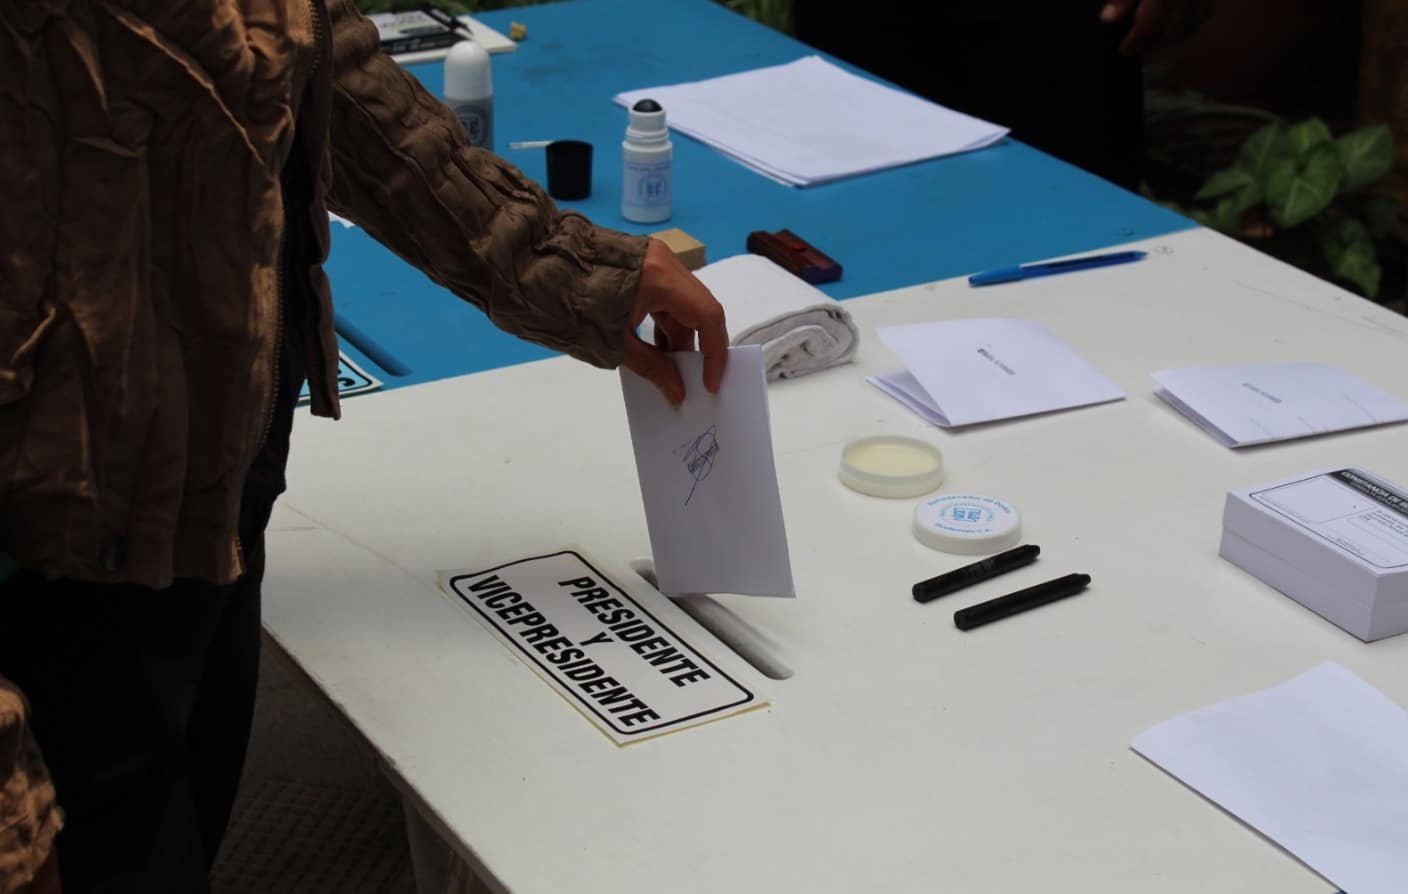 Alistan casi 3,500 centros de votación de cara a próximas elecciones presidenciales en Guatemala